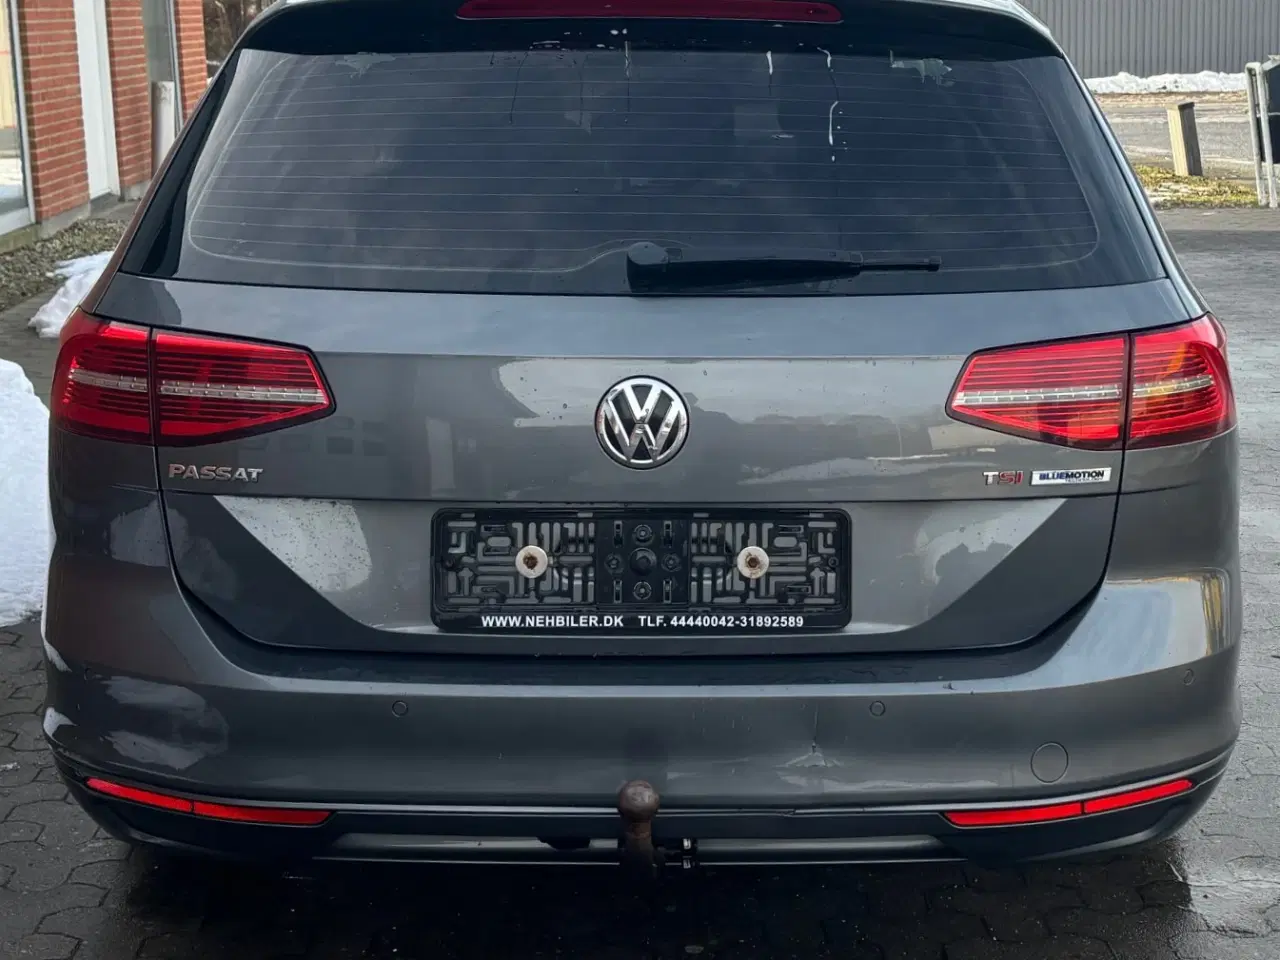 Billede 5 - 2015 Volkswagen passat st car facelift 1,4 tsi 150